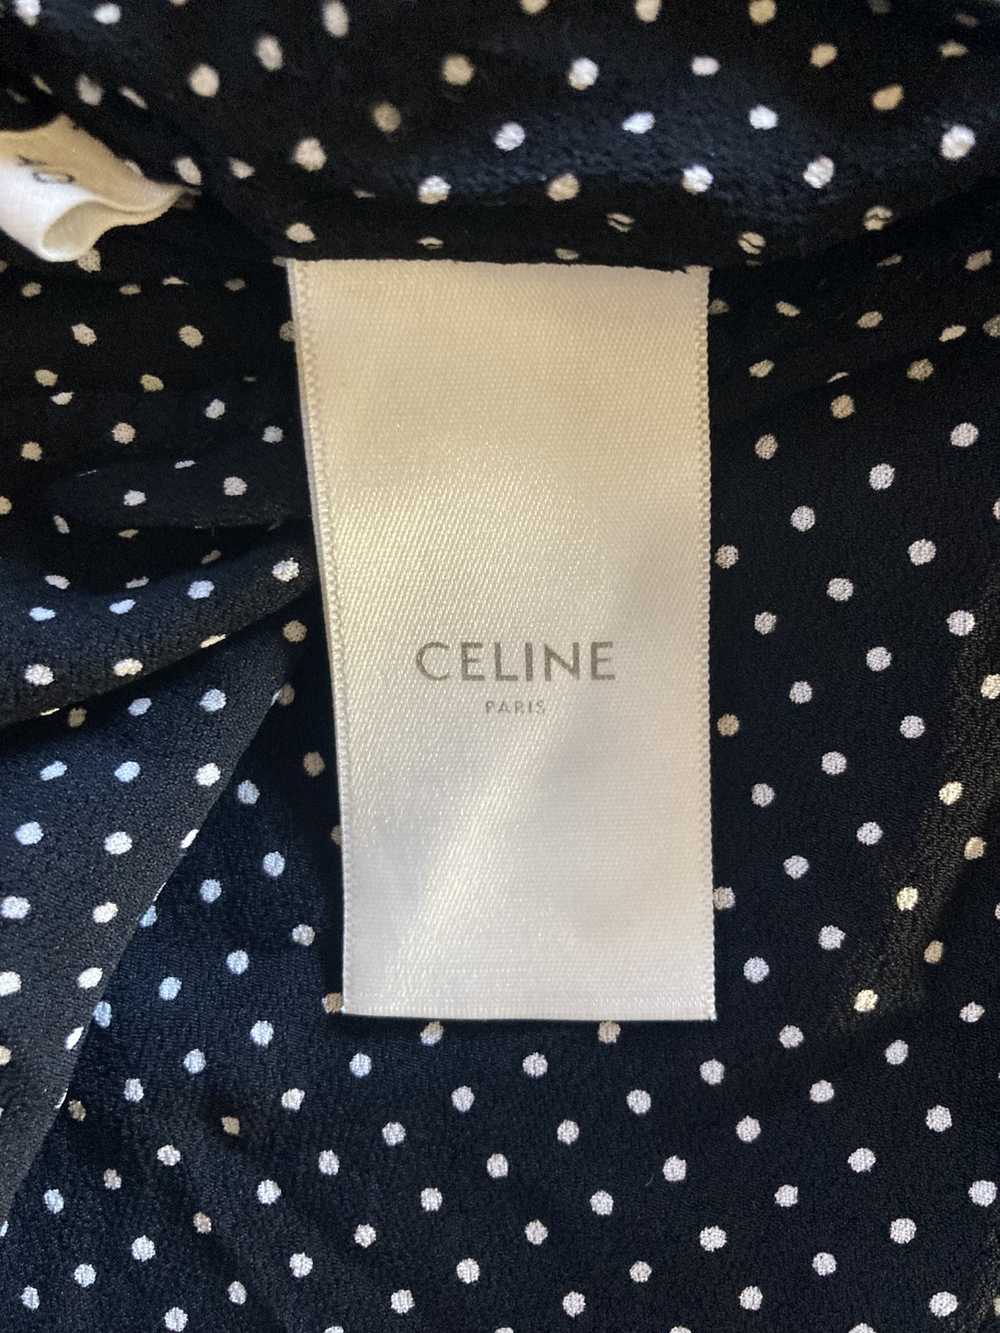 Celine Celine Hedi Slimane Polka Dot Viscose Shirt - image 7